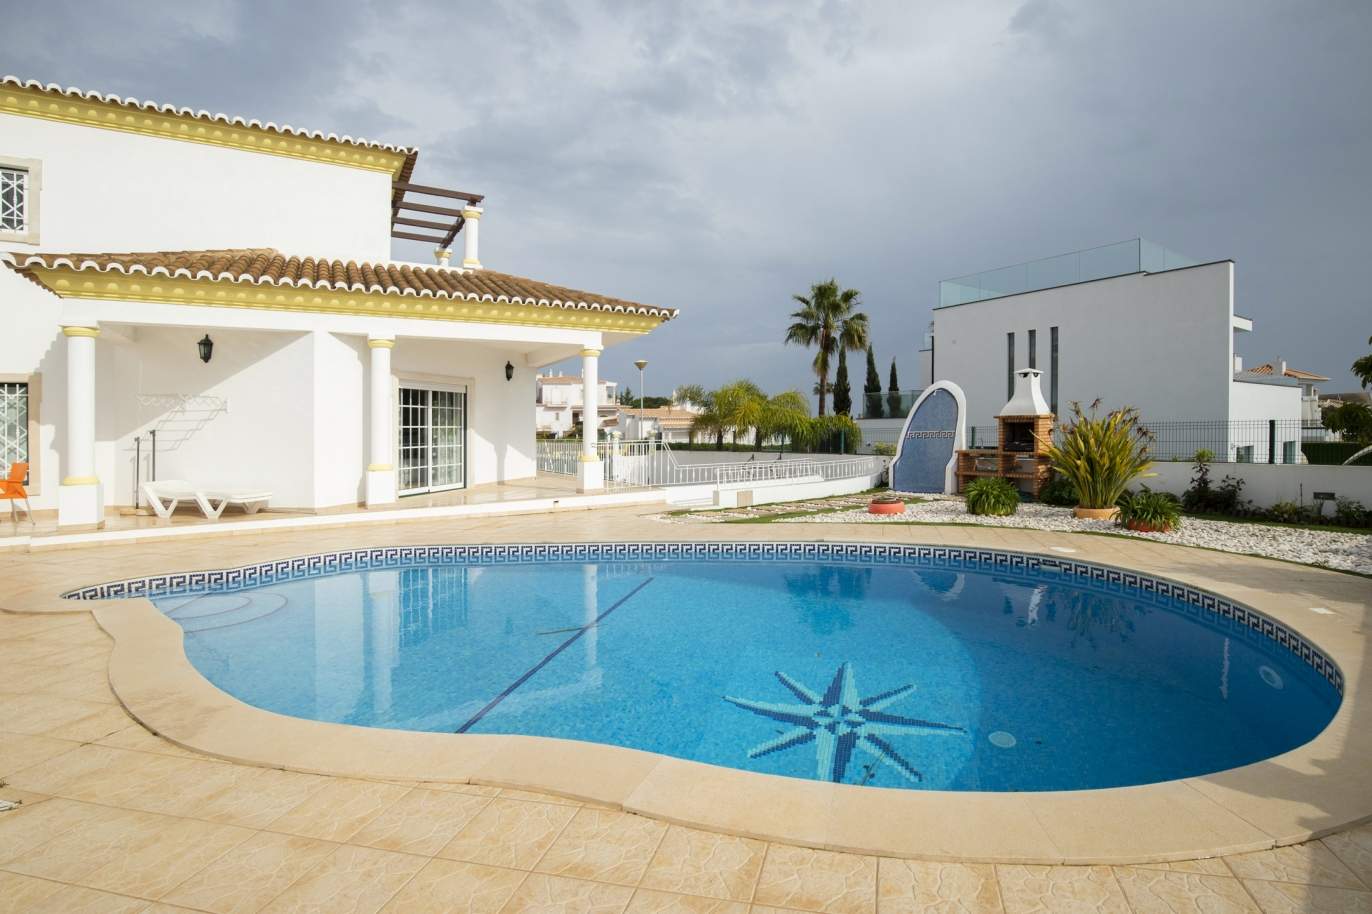 Moradia T4 com piscina, para venda, em Albufeira, Algarve_196127